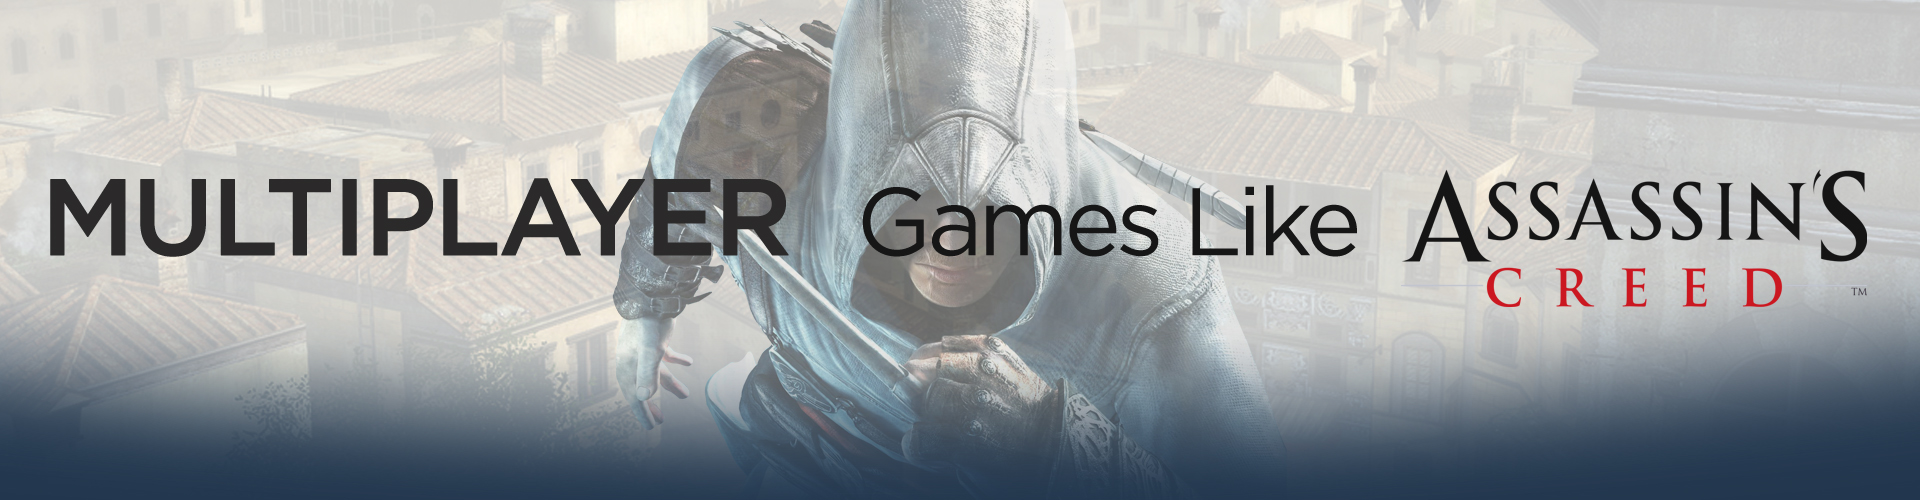 Los mejores juegos como Assassin's Creed en Multijugador